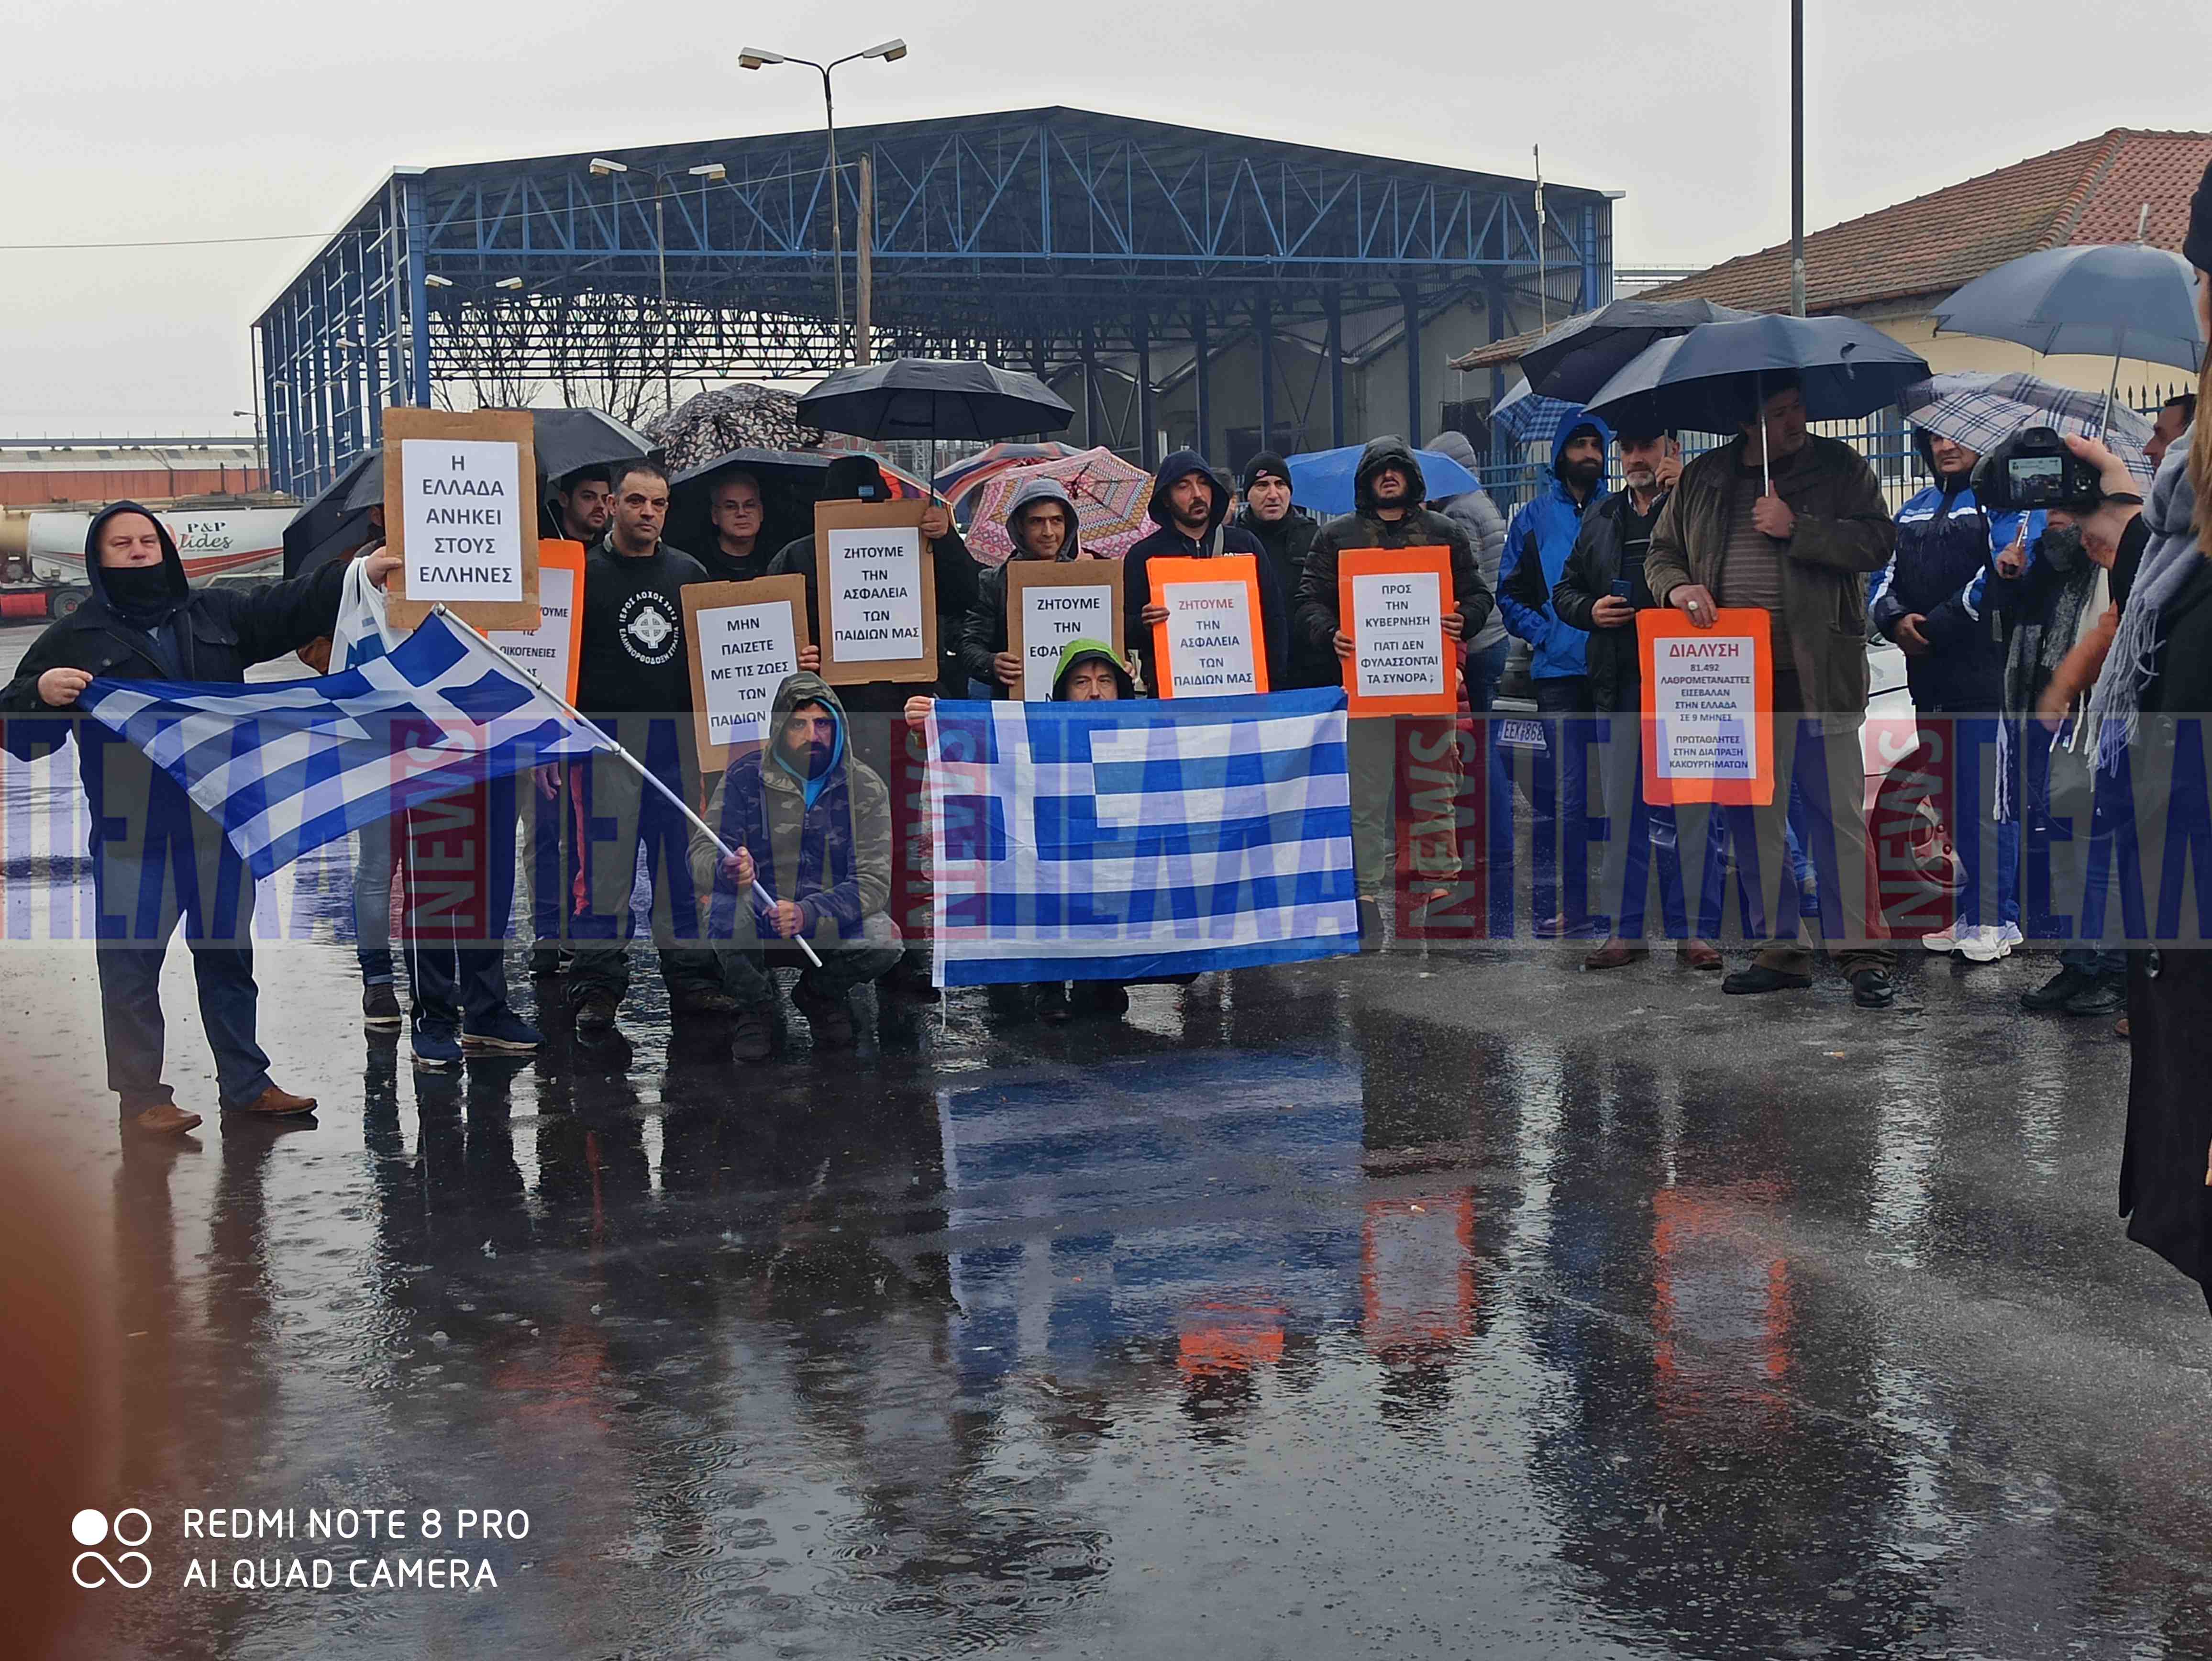 Γιαννιτσά: Στους δρόμους μετά το άγριο επεισόδιο ανάμεσα σε Έλληνες και αλλοδαπούς μαθητές σε σχολείο [pics]